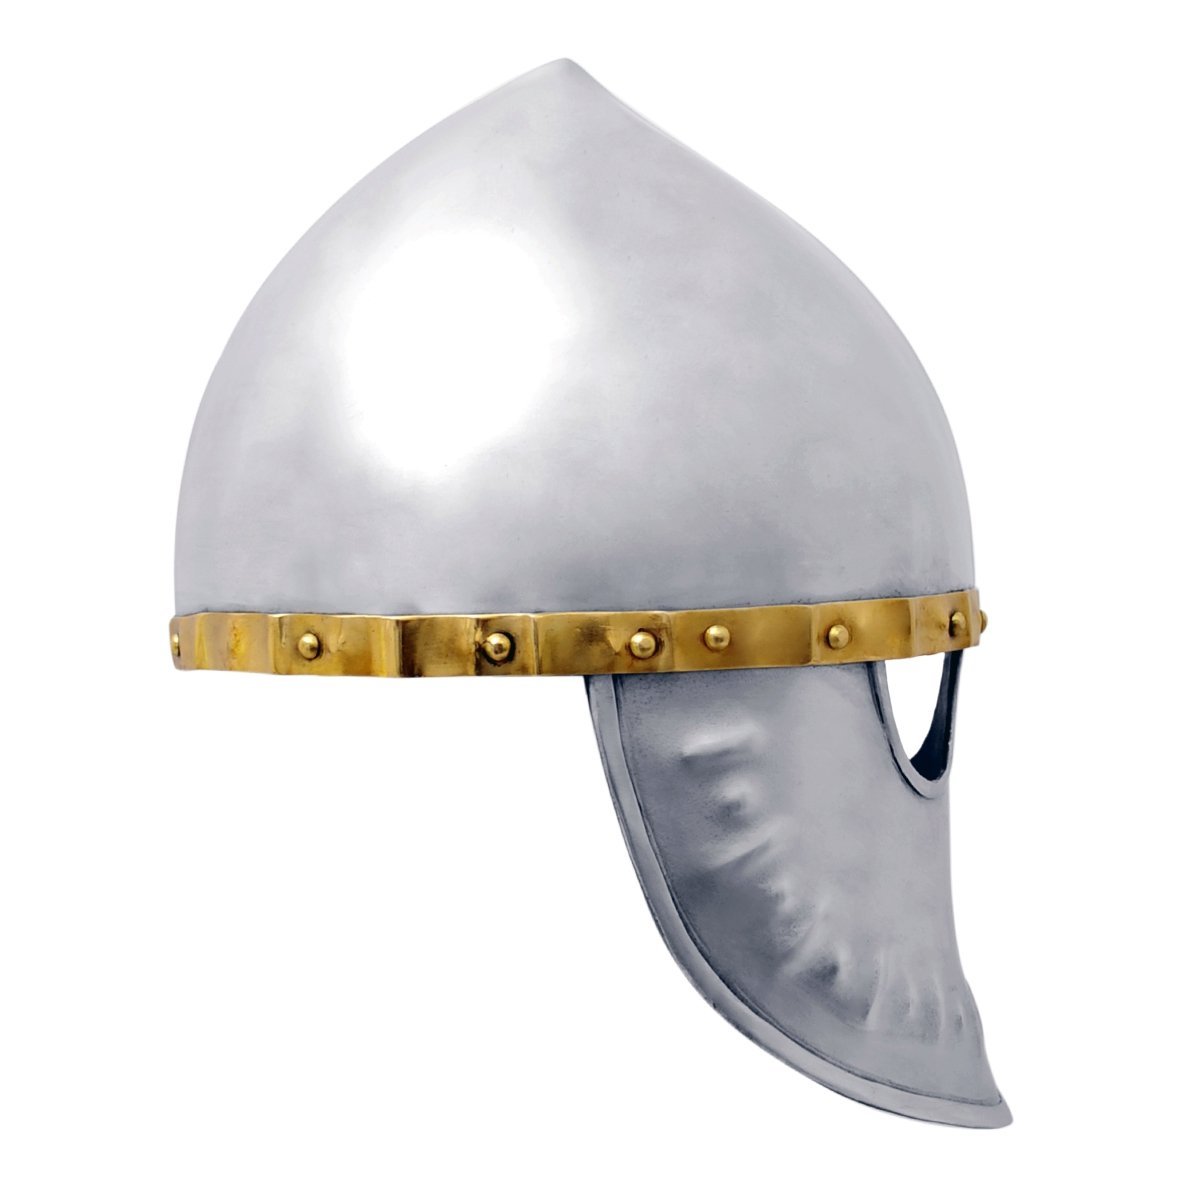 Italo-Normannischer Helm - um 1170, Größe M